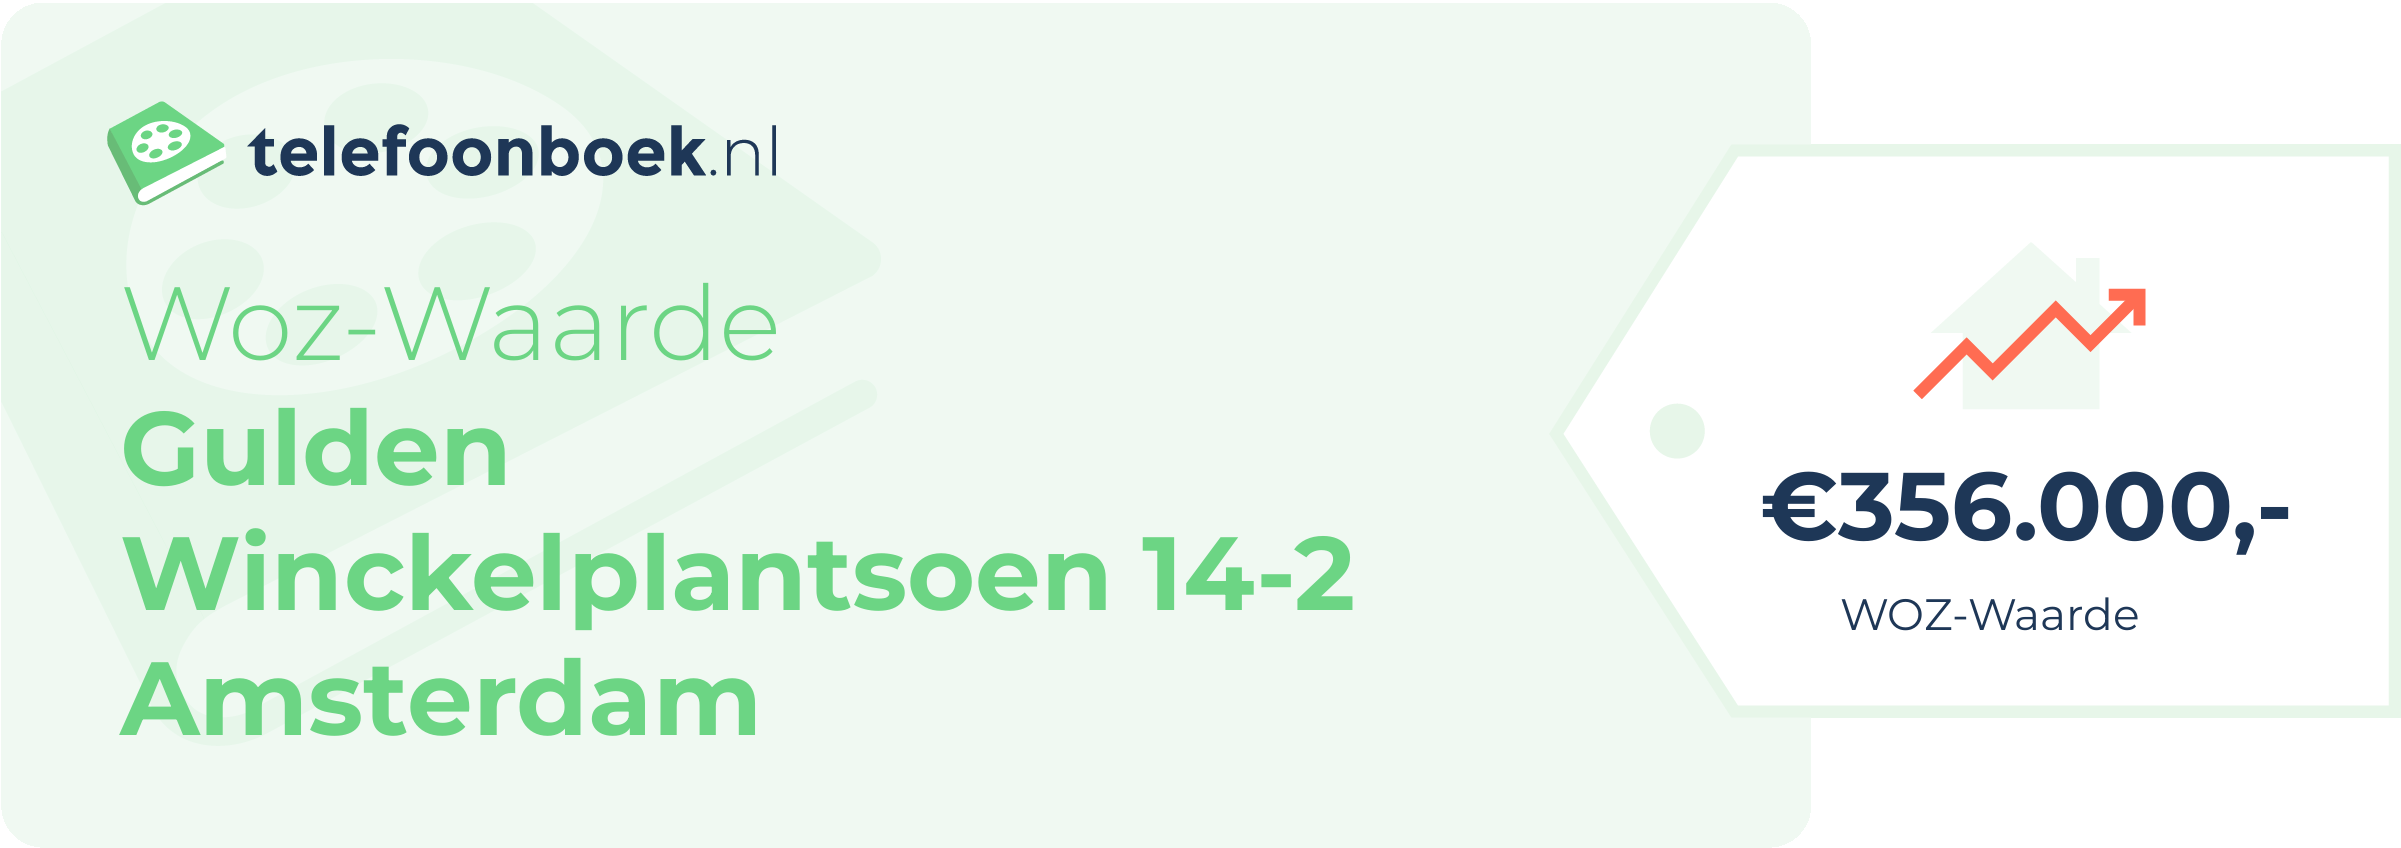 WOZ-waarde Gulden Winckelplantsoen 14-2 Amsterdam